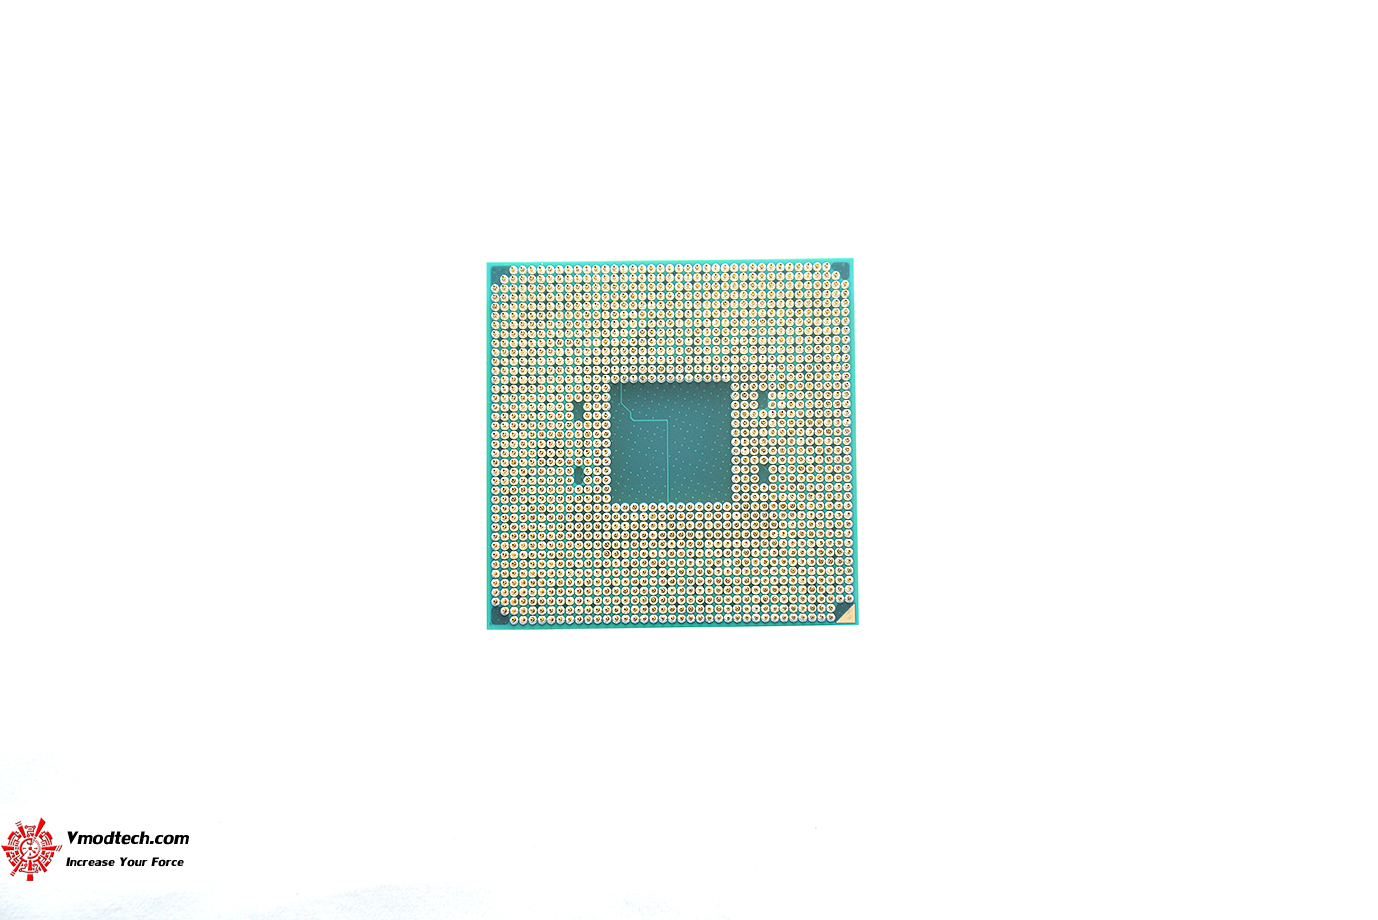 dsc 4673 AMD RYZEN 5 5600G PROCESSOR REVIEW